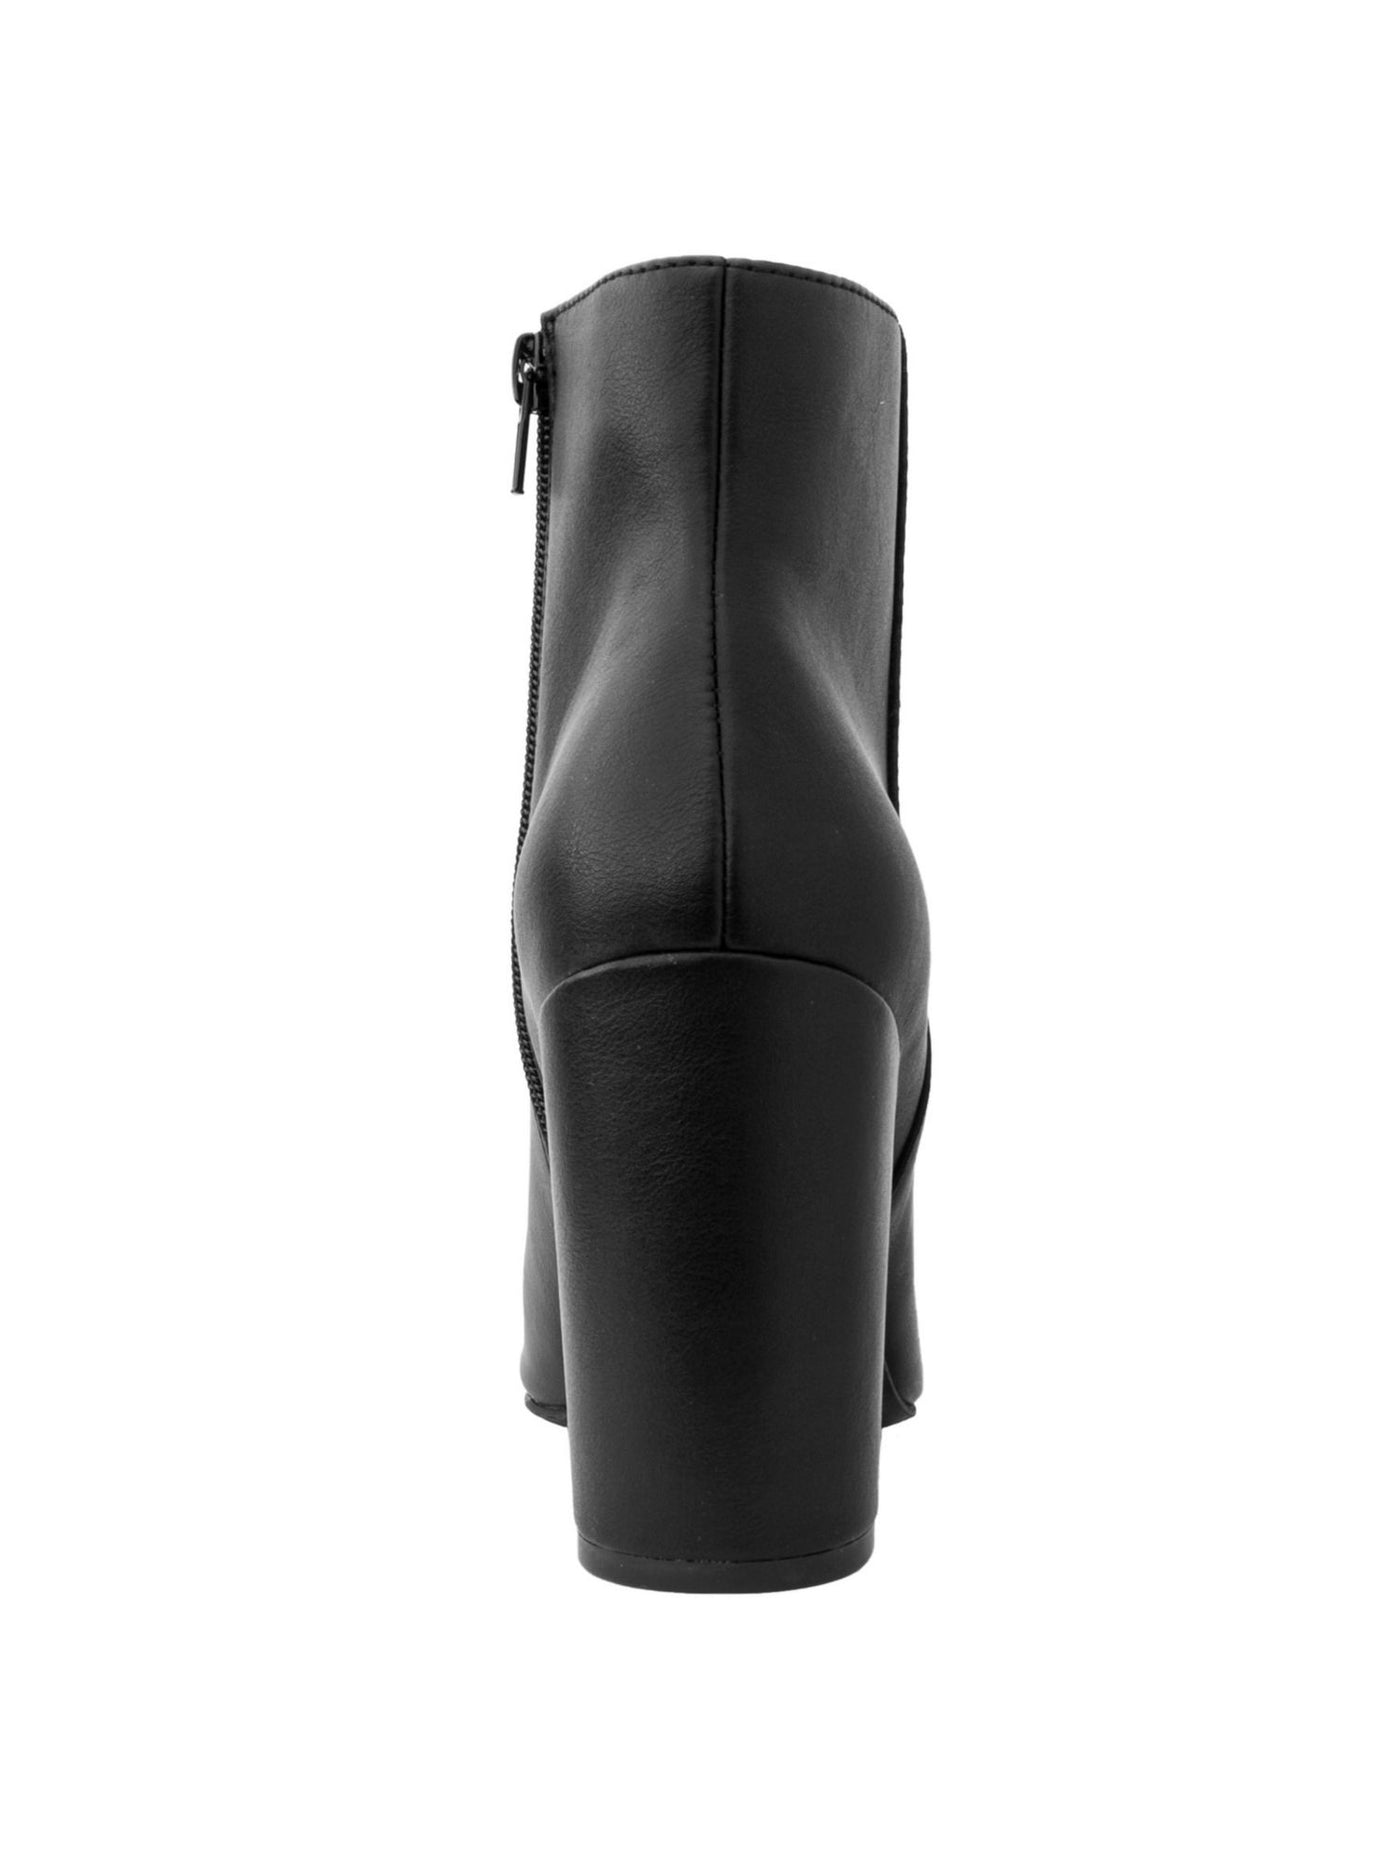 SUGAR Womens Black Comfort Evvie Pointed Toe Block Heel Zip-Up Booties 7.5 M